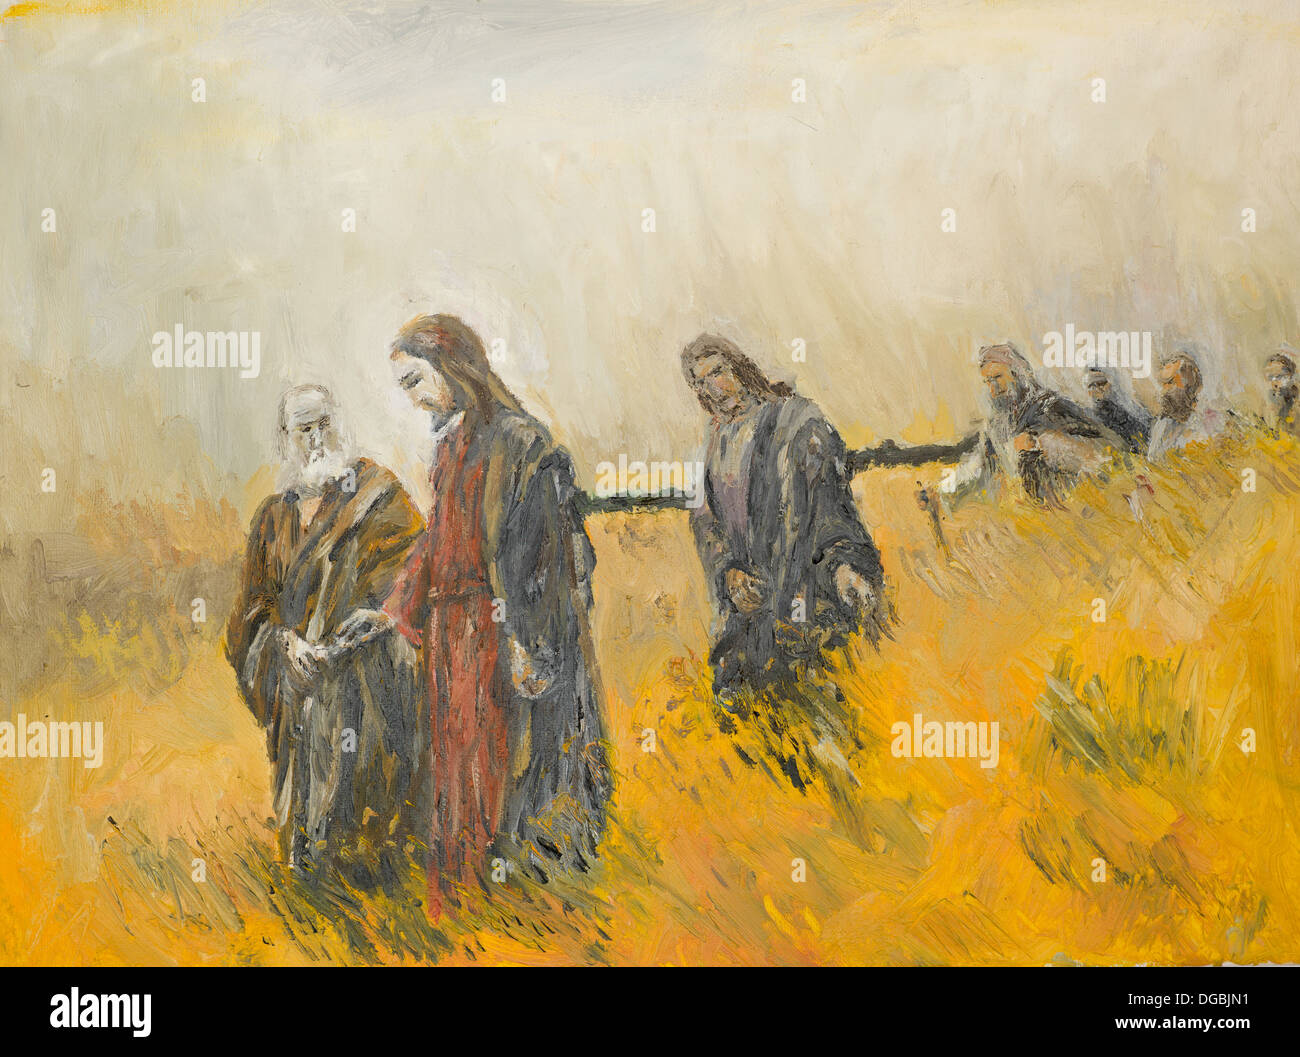 Peinture à l'huile illustrant une scène religieuse, jésus christ et ses disciples sur un pré Banque D'Images